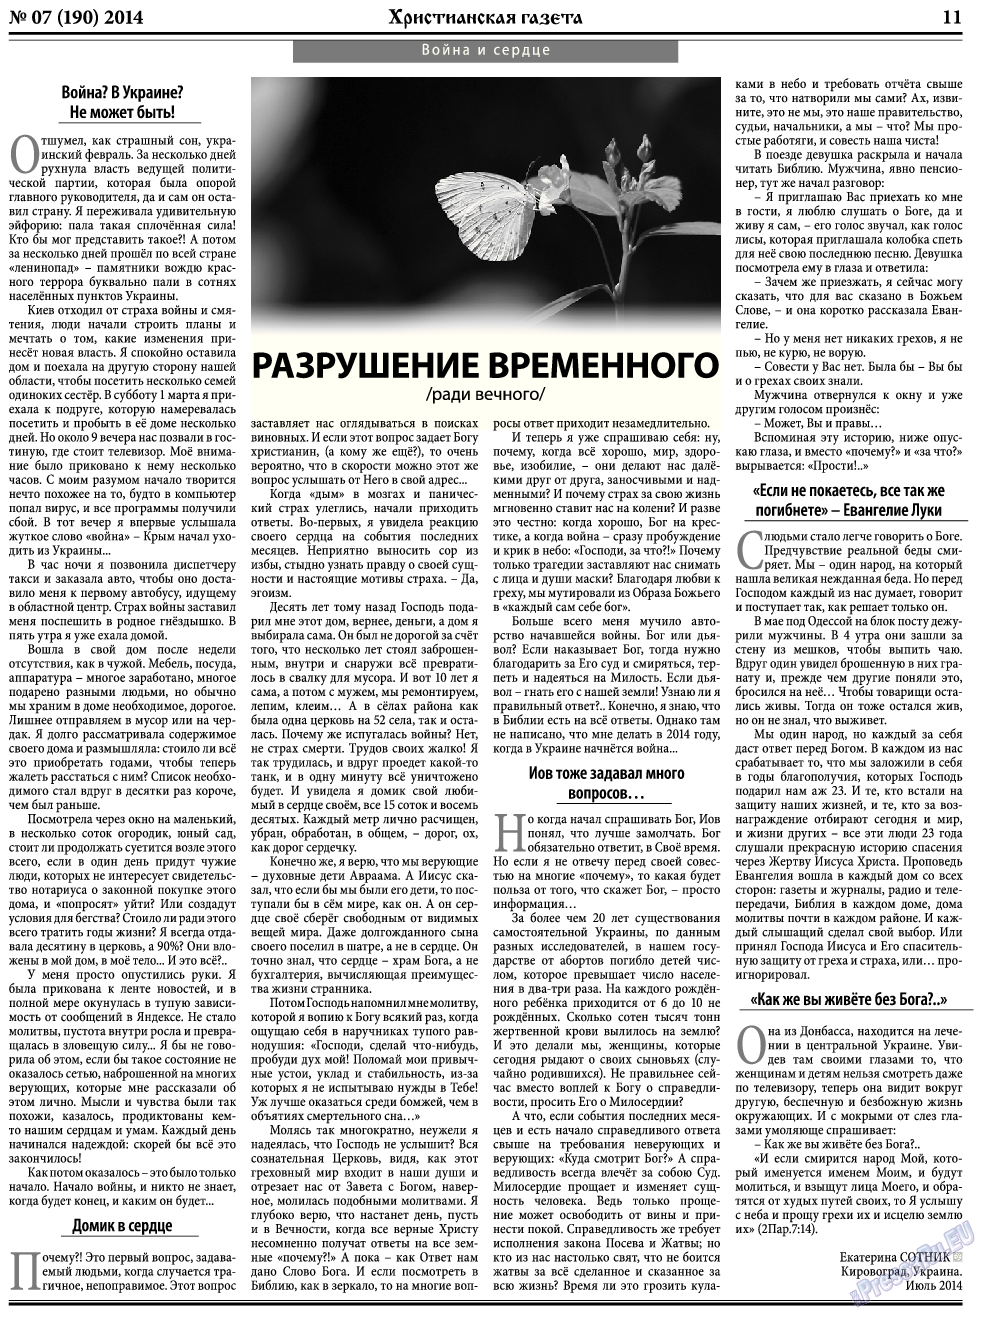 Христианская газета, газета. 2014 №7 стр.11